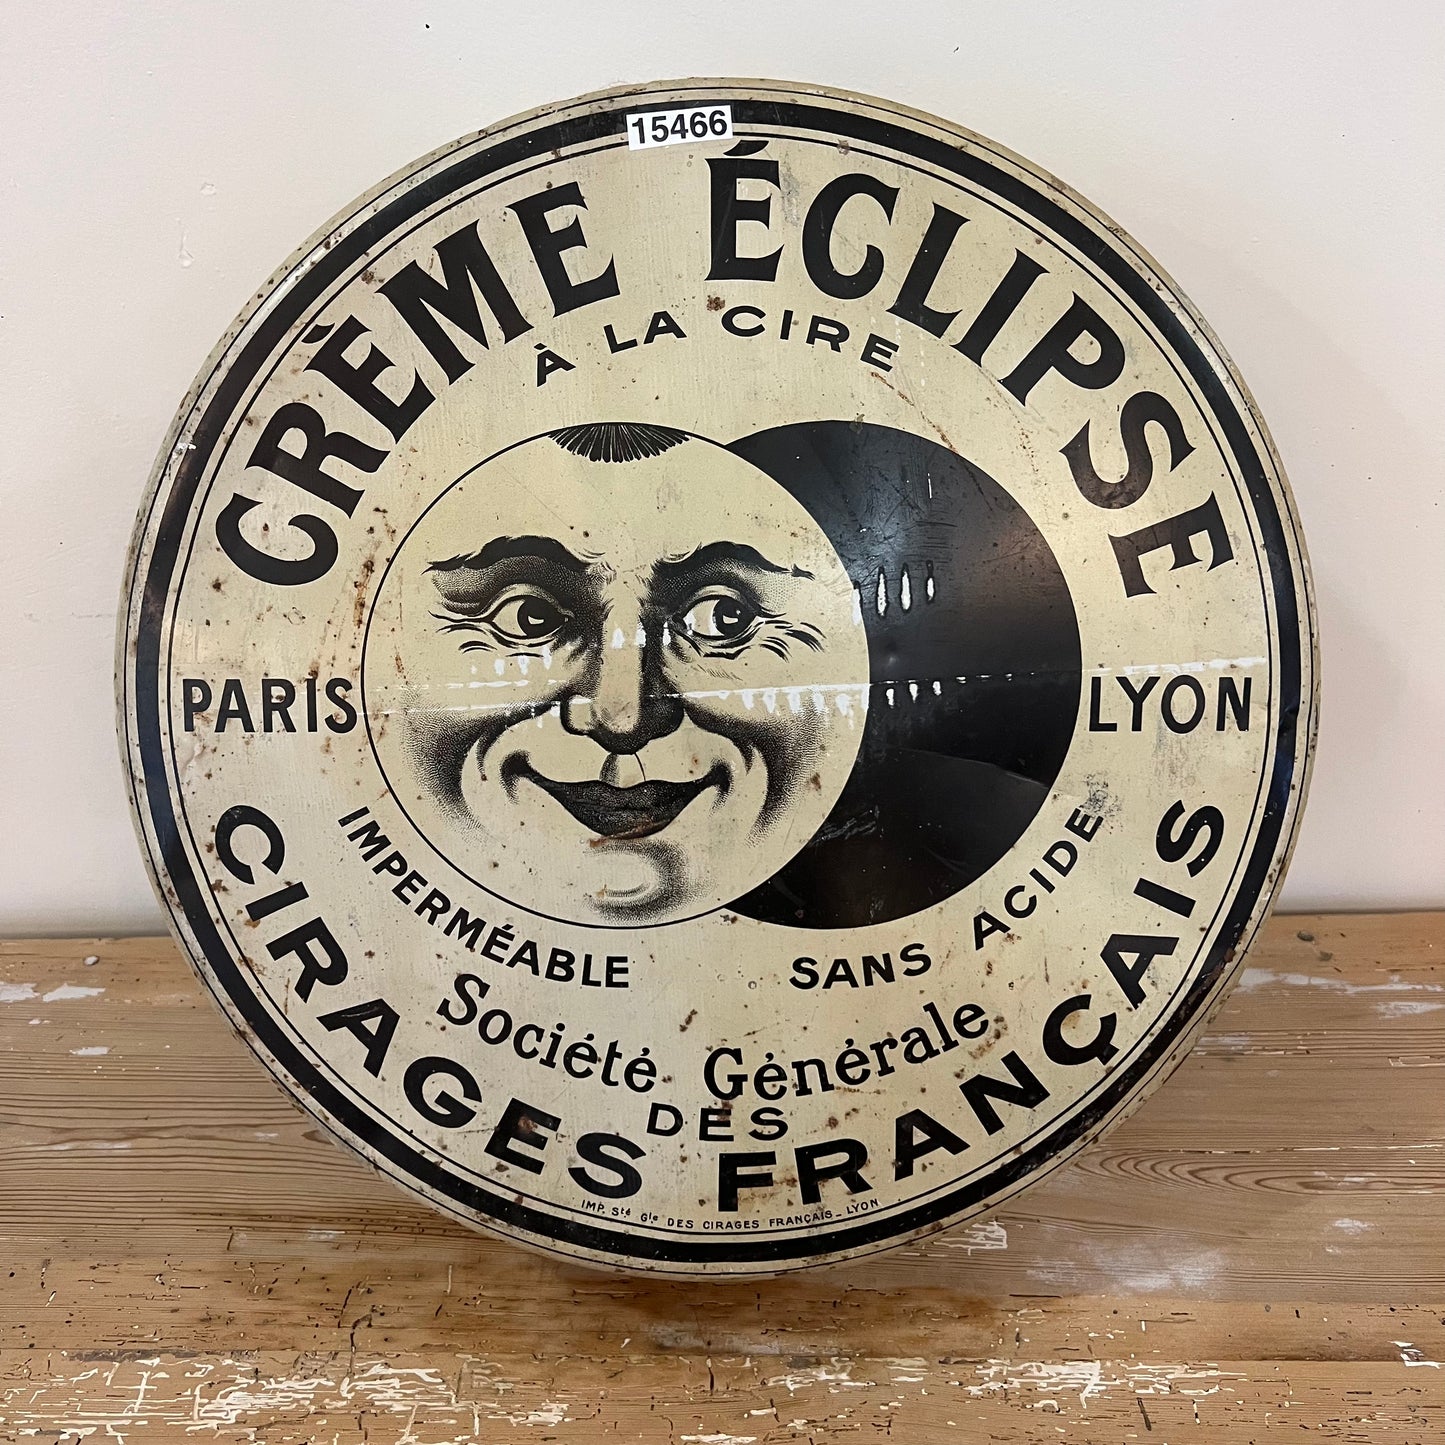 Creme Eclipse Advertising Tin